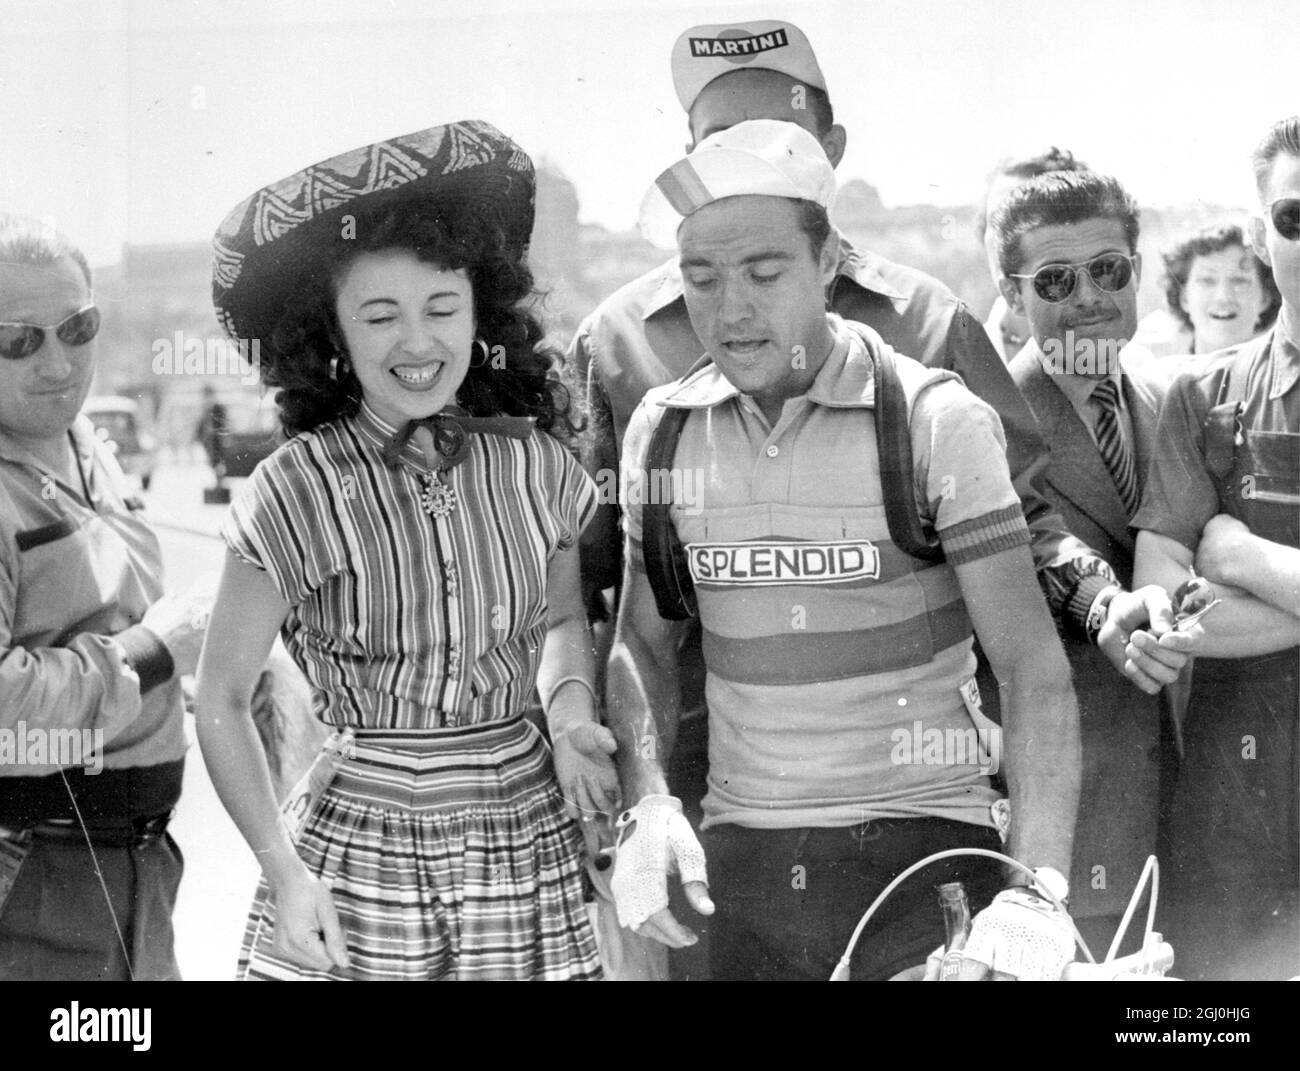 Das berühmte '' Tour De France '' - das anstrengendste und schwierigste Radrennen der Welt, ging am Donnerstag zu einem fliegenden Start, als die Menge auf 150,000 jubelte 130 Fahrer auf ihrem Weg - 2,700 Meilen schätzte. Teams aus Großbritannien, Belgien, Spionage, Holland, Italien, Luxemburg, die Schweiz und Frankreich nehmen daran Teil. Ausgangspunkt war der französische Hafen Le Havre Tacoma und die erste Runde mit 64 Meilen endete in Dieppe und wurde von dem Spanier Miguel Poblet beendet. Er legte die Strecke in 2 Stunden. 39 Minuten . 31 Sekunden . Frankreich wurde in dieser ersten Runde in Belgien Dritter Stockfoto